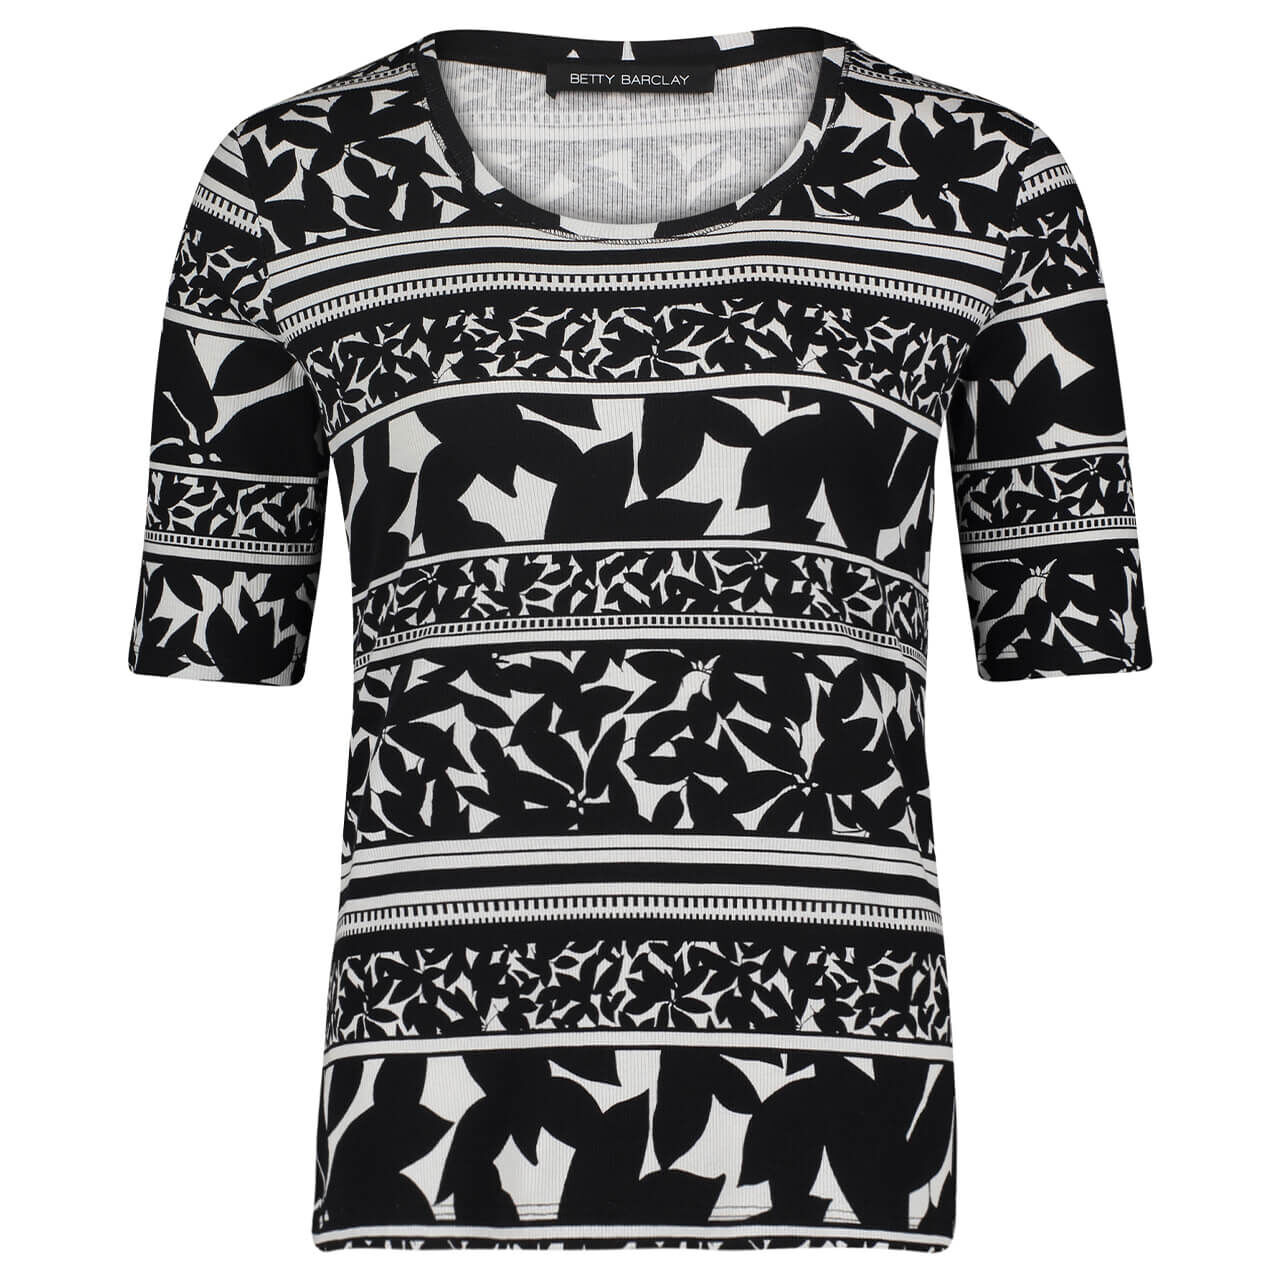 Betty Barclay T-Shirt für Damen in Schwarz-Weiß, FarbNr.: 9812